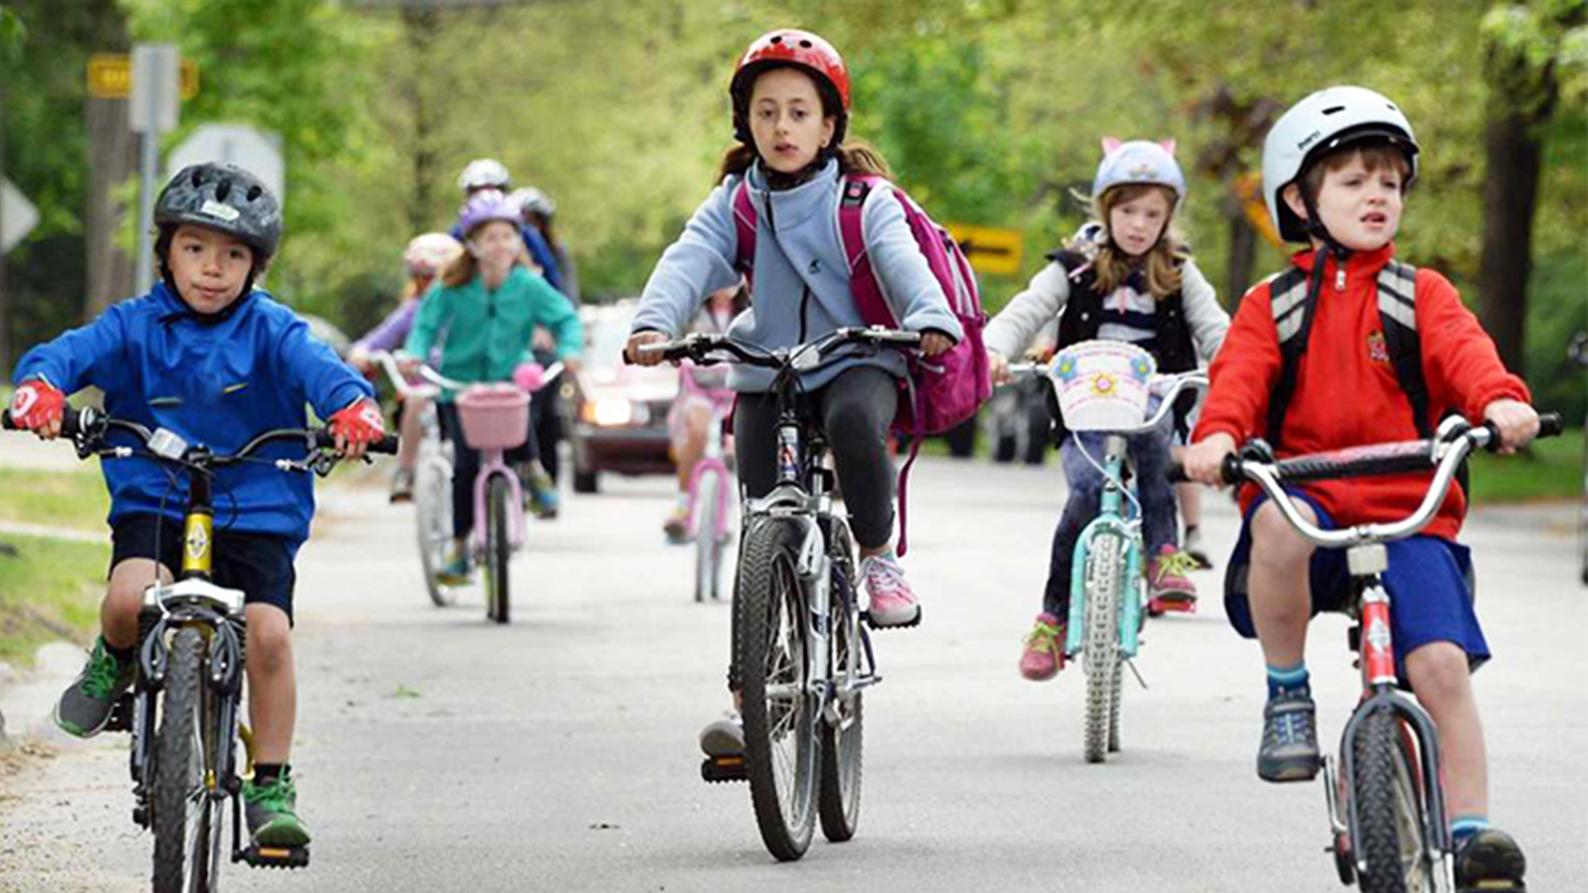 Ride their bikes. Велоспорт для детей. Детская Велошкола. Дети на велосипедах велогонки. Kids Ride a Bike.